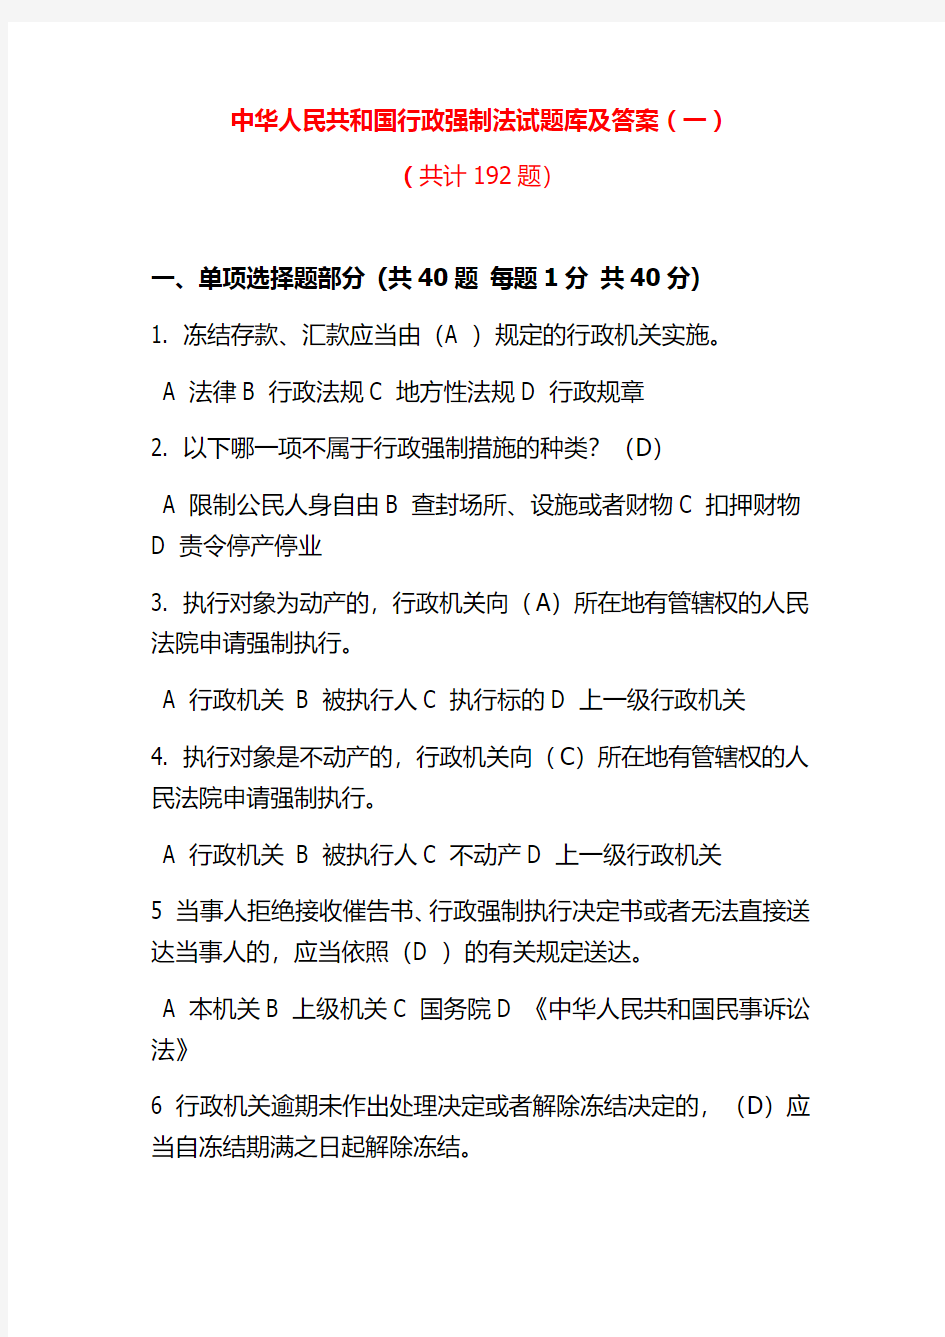 中华人民共和国行政强制法试题库及答案(十一套)